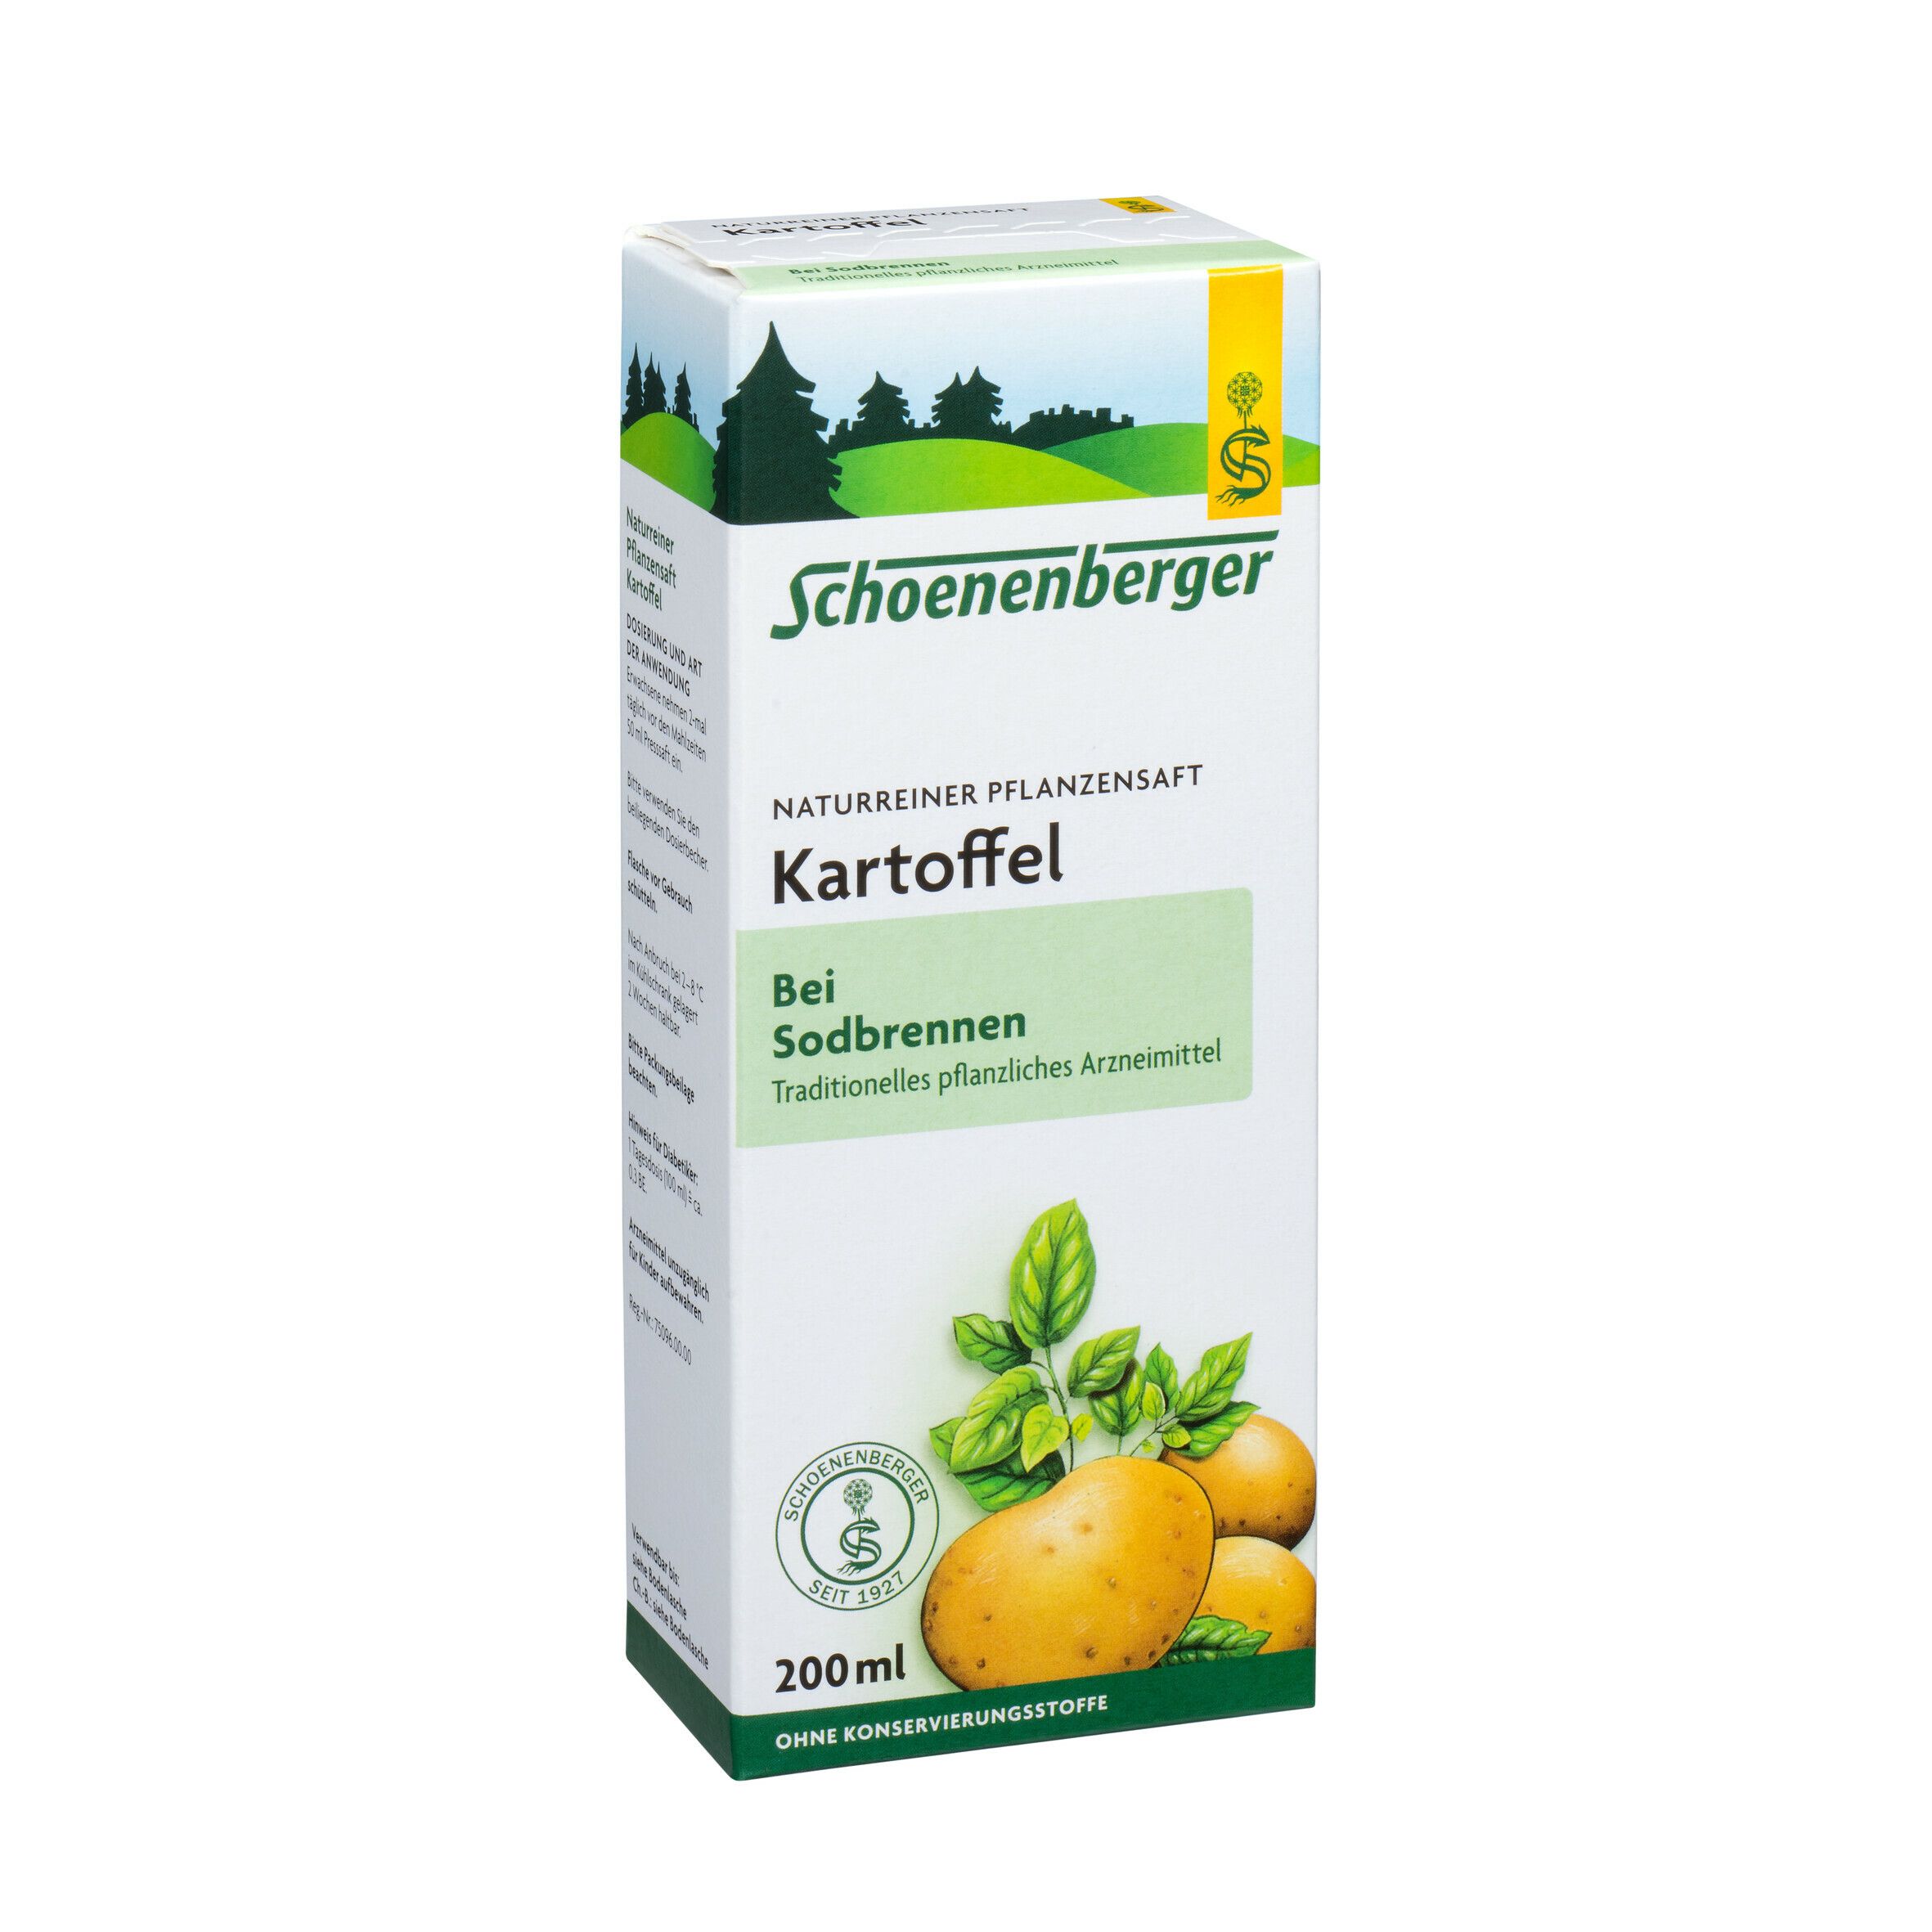 Schoenenberger® naturreiner Pflanzensaft Kartoffel